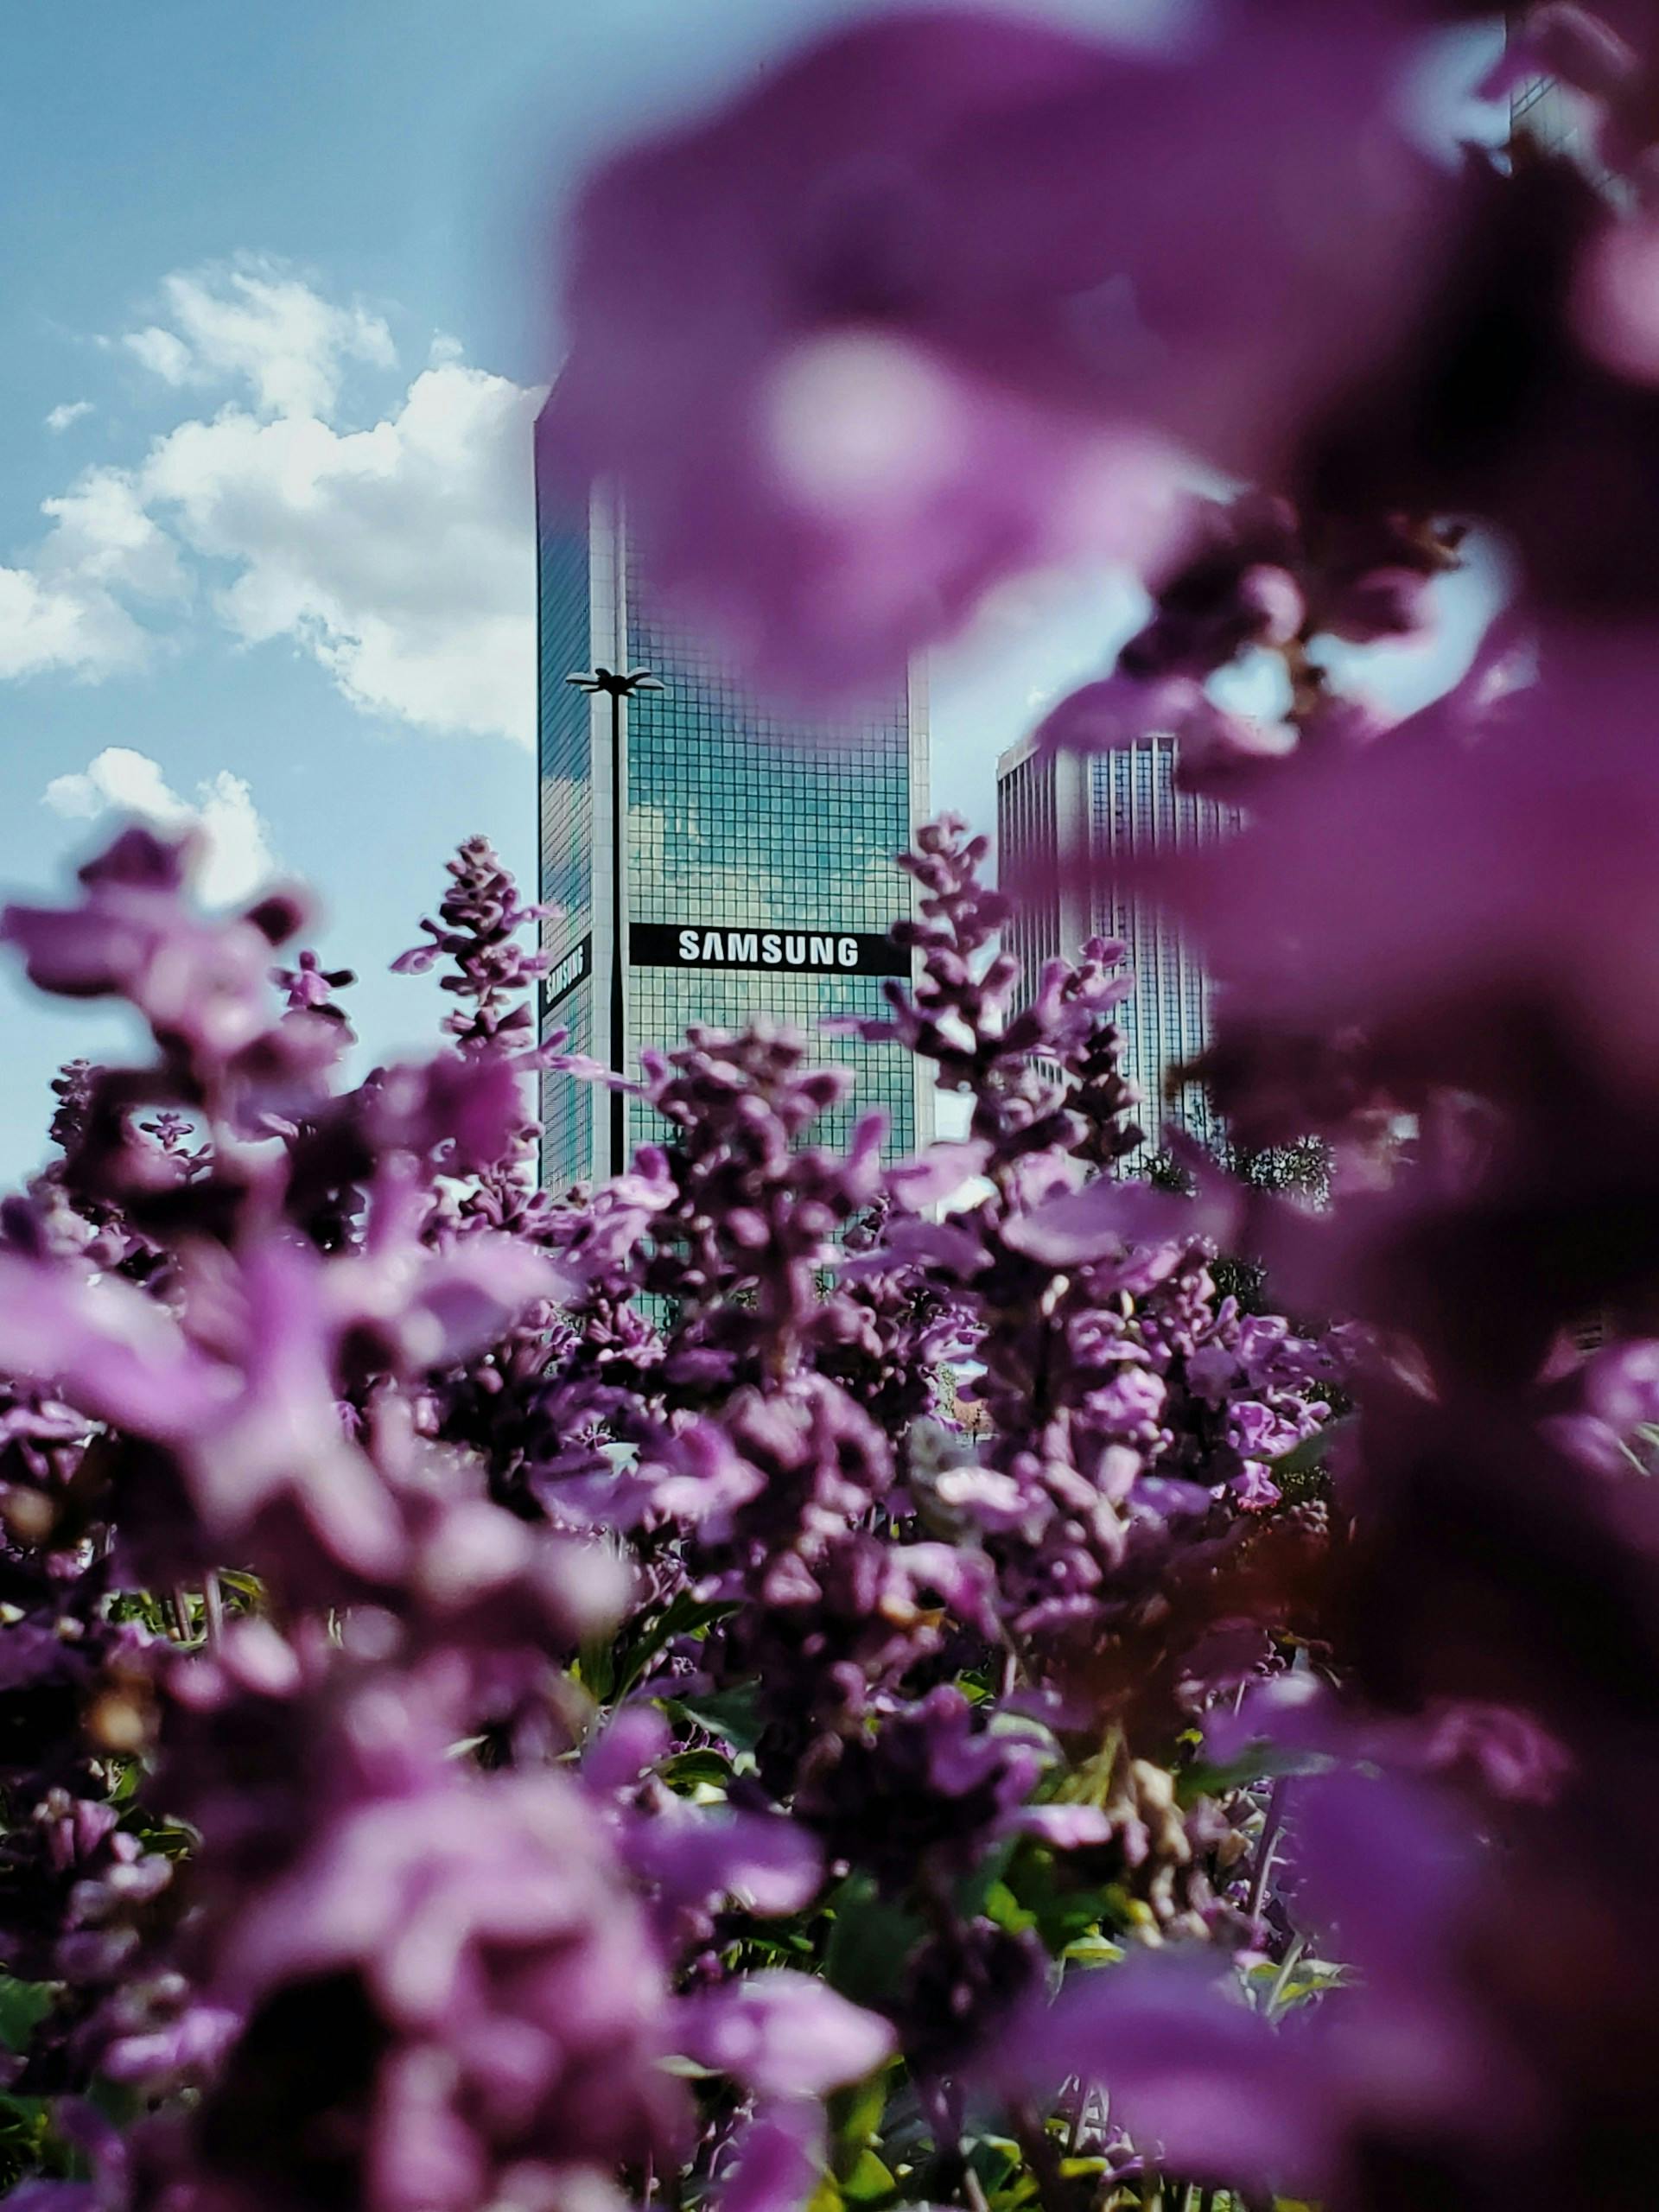 Hochhaus mit Samsung Aufschrift verdeckt von violetten Blumen